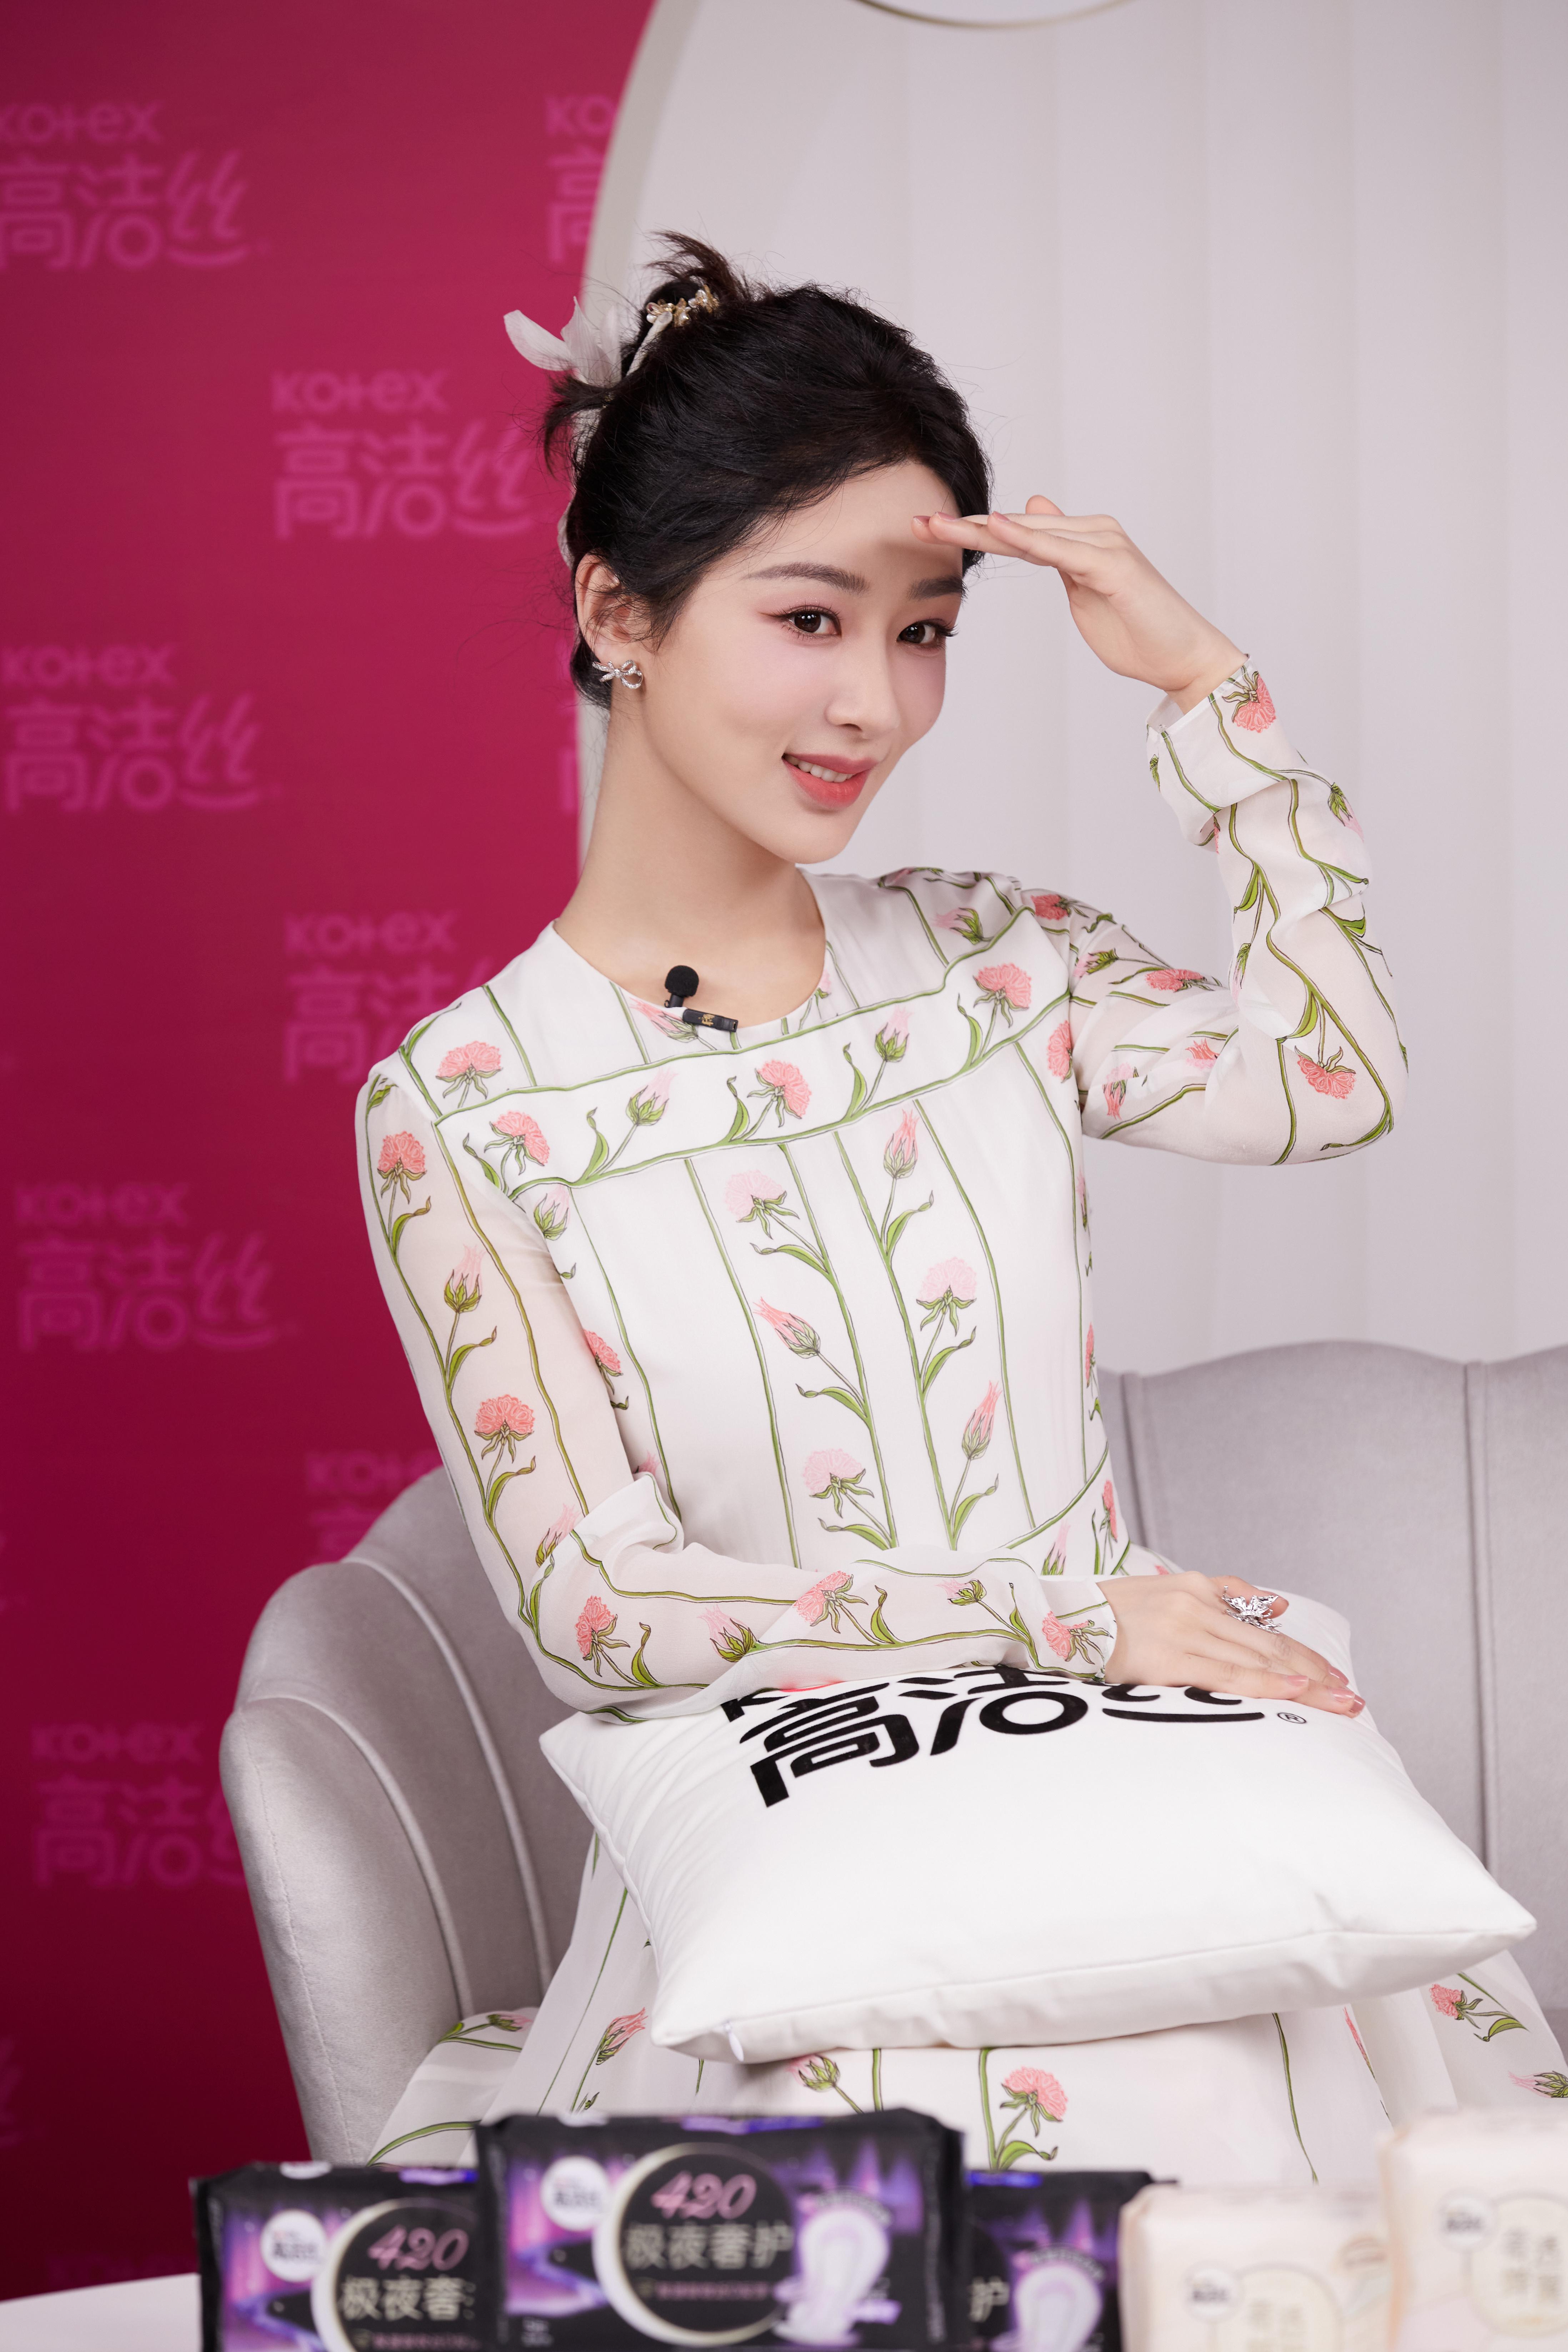 杨紫白色印花长裙盘发造型优雅动人 手持鲜花合影人比花娇,2 (1)